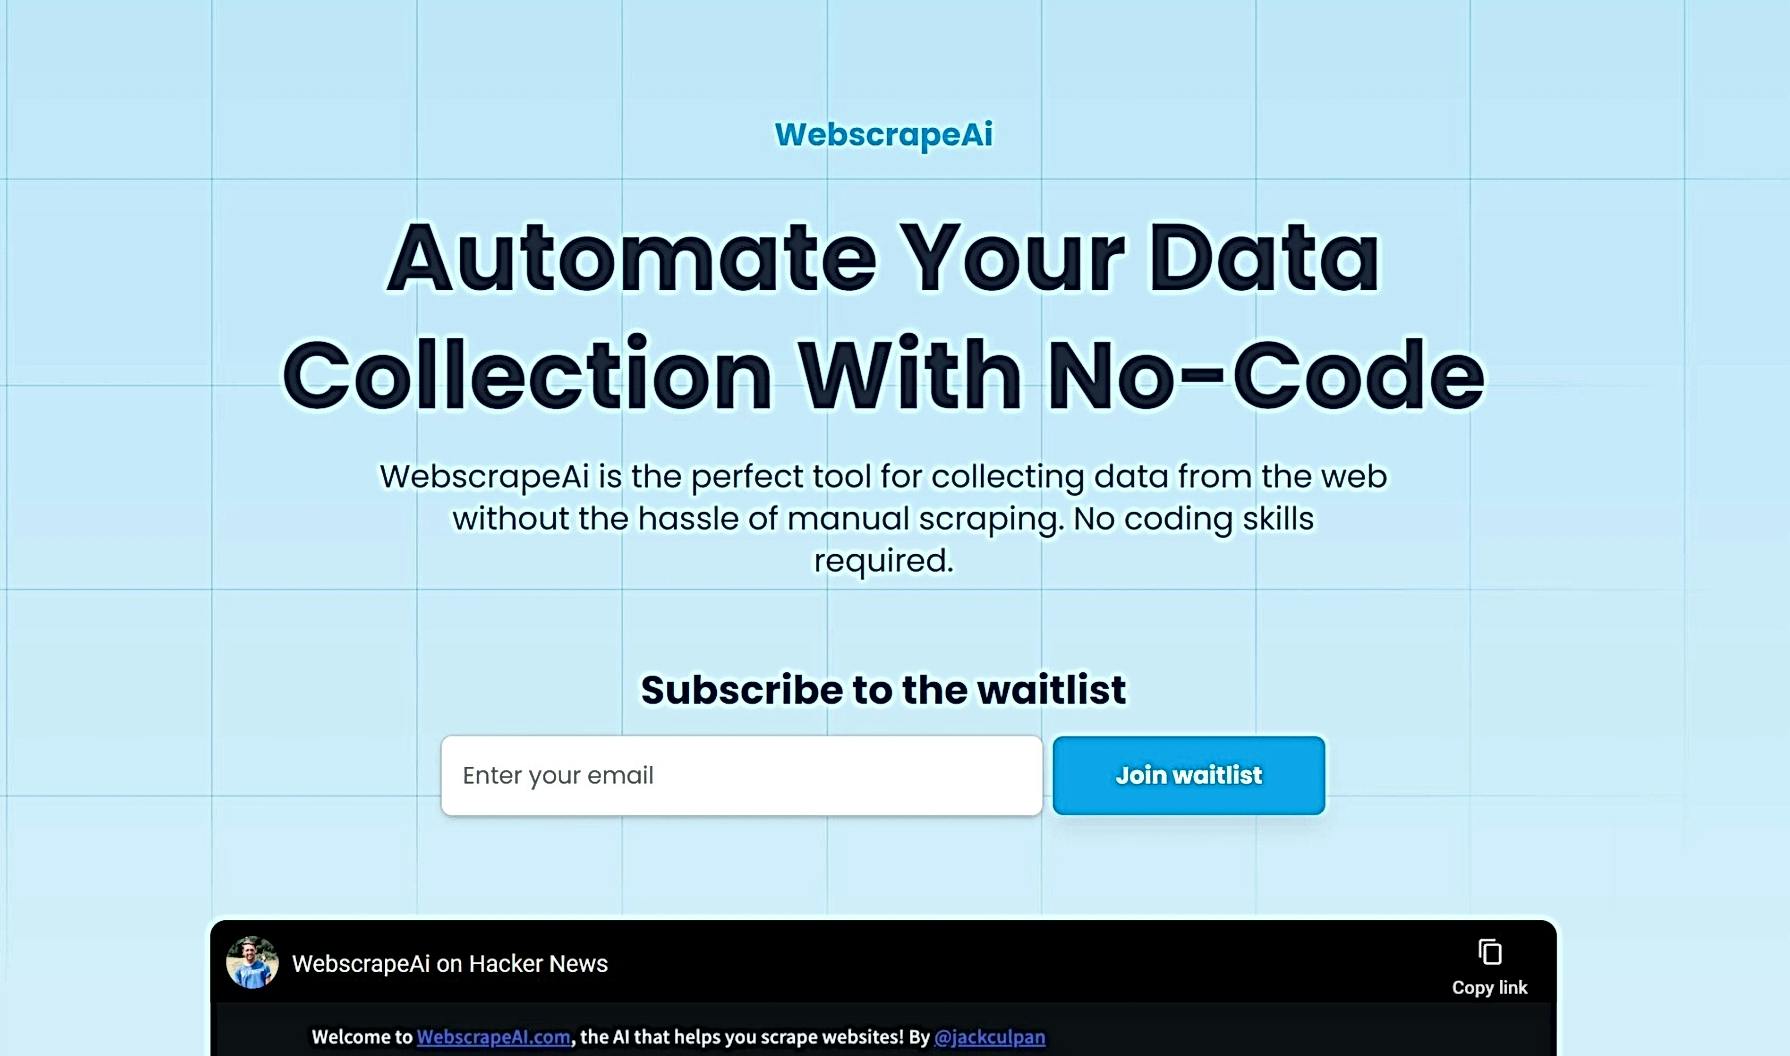 WebscrapeAi featured